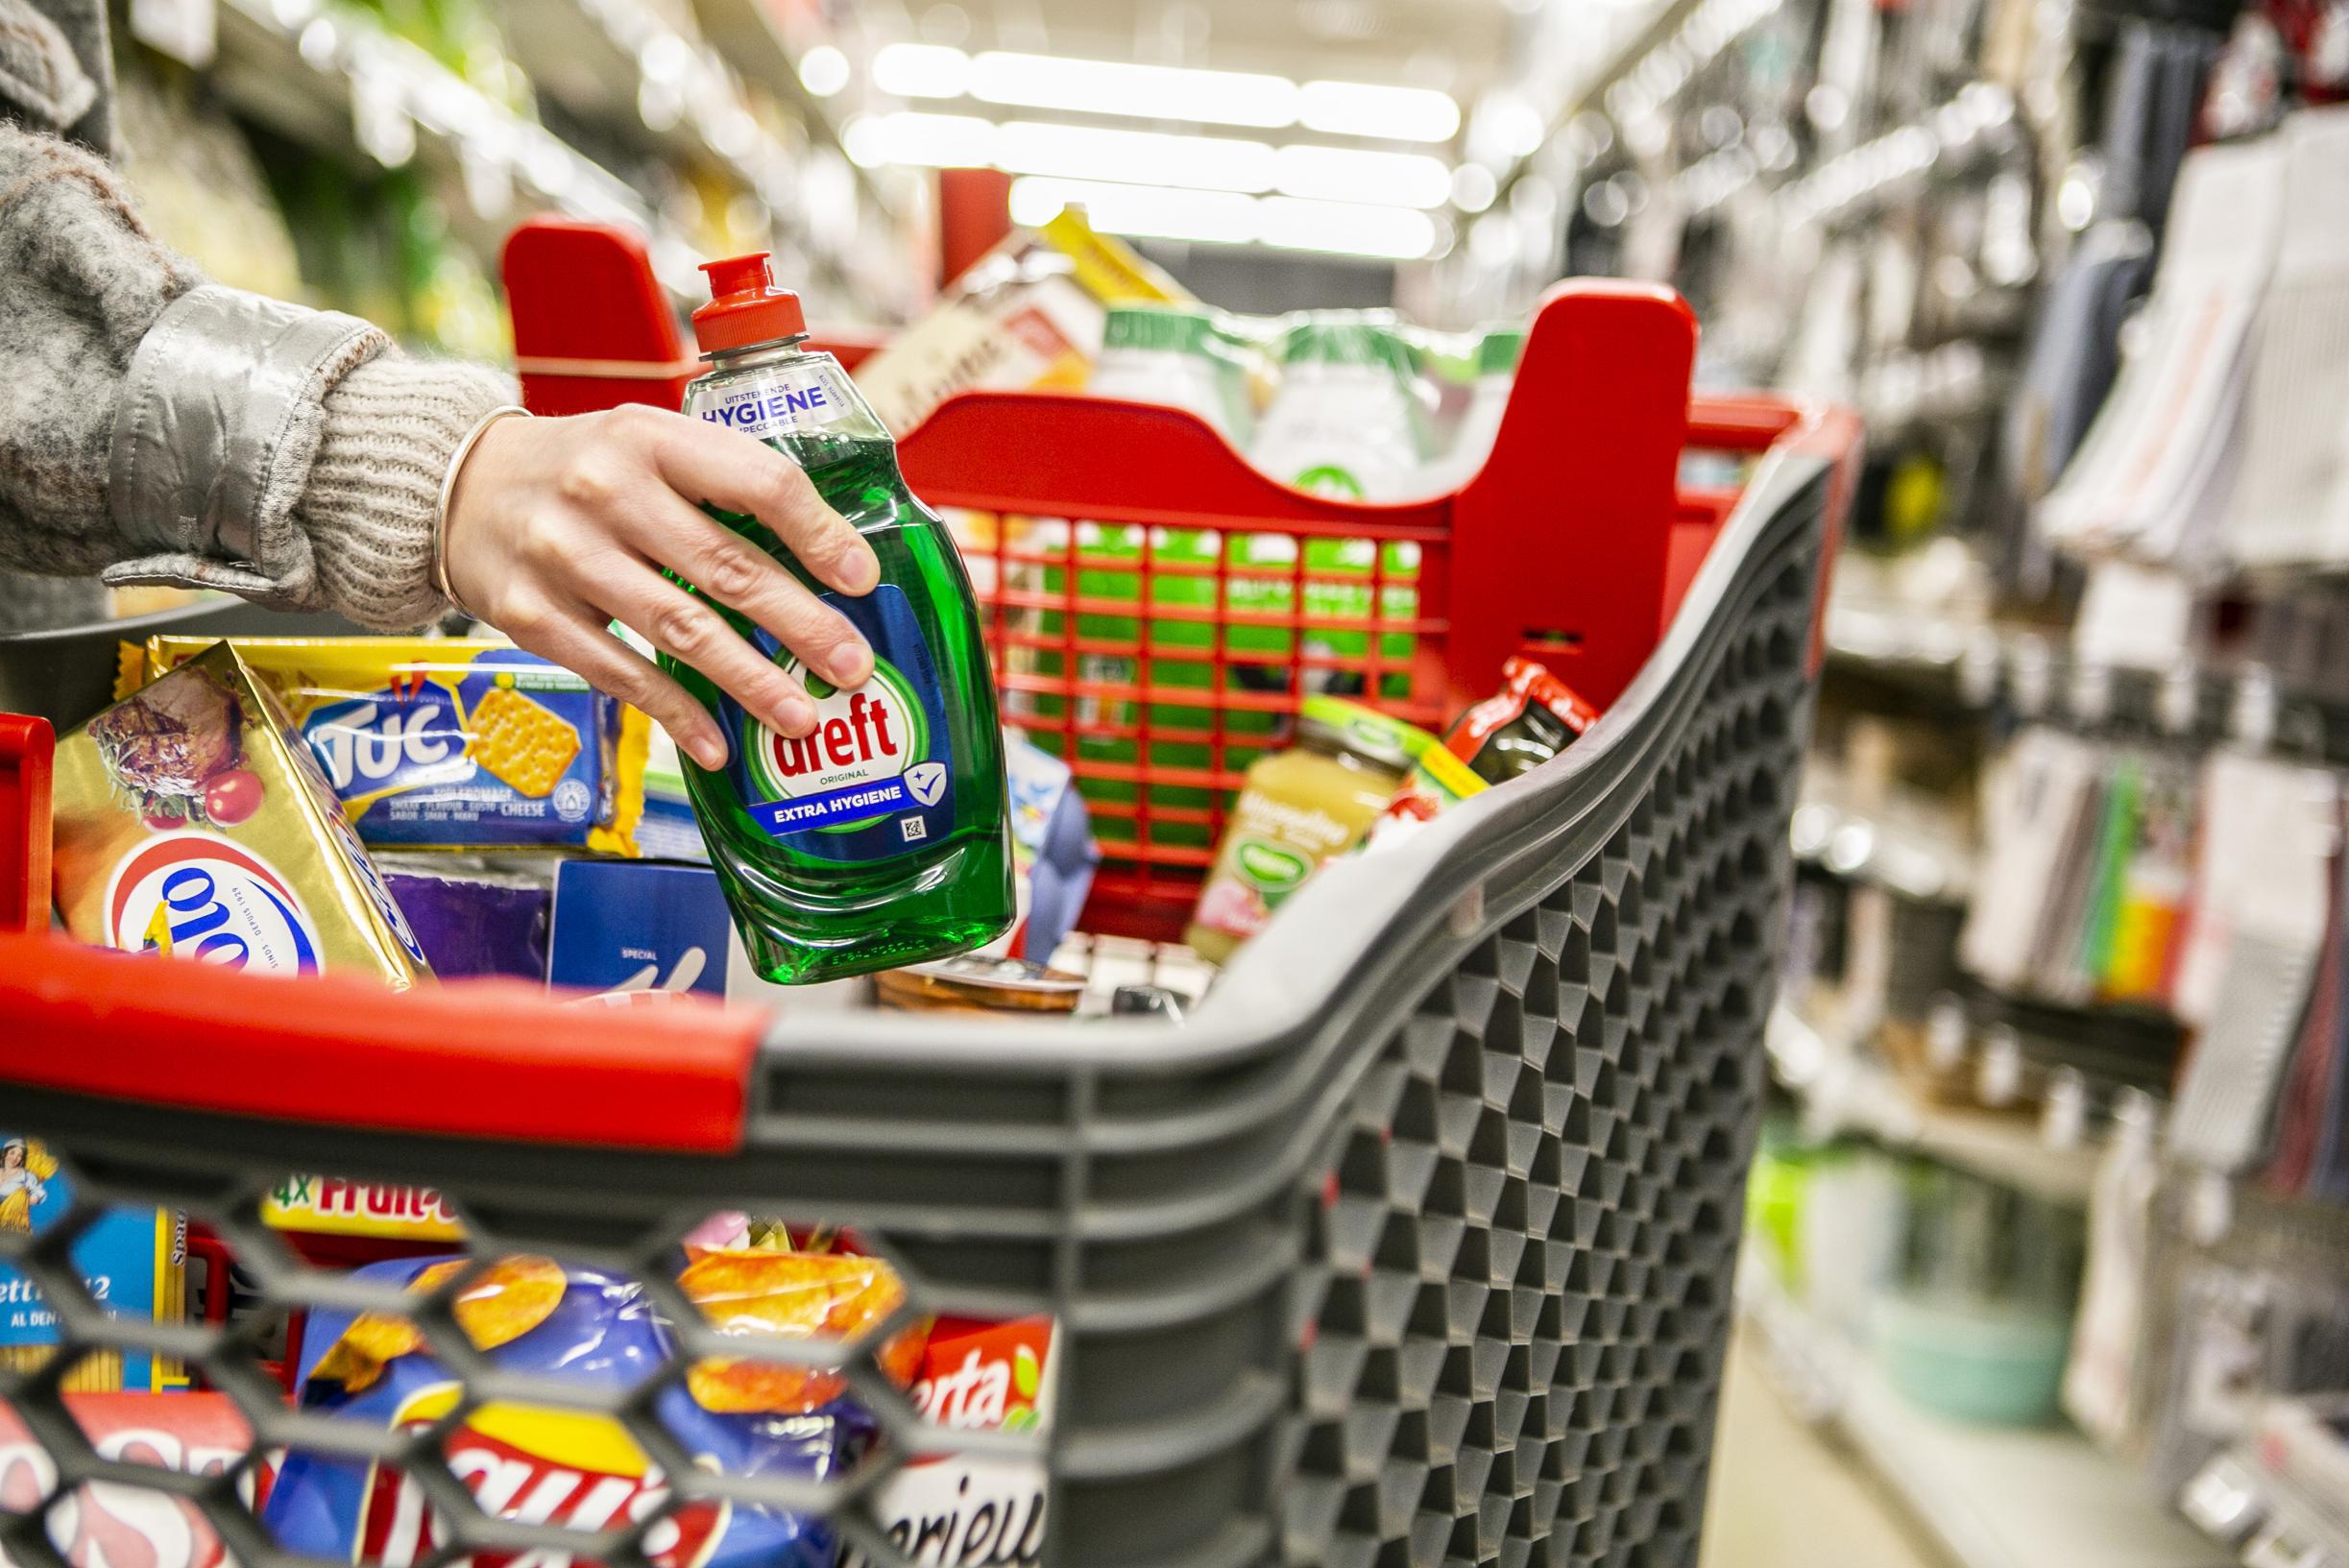 België ervaart een inflatie van 3,2 procent, wat leidt tot hogere prijzen voor bepaalde producten